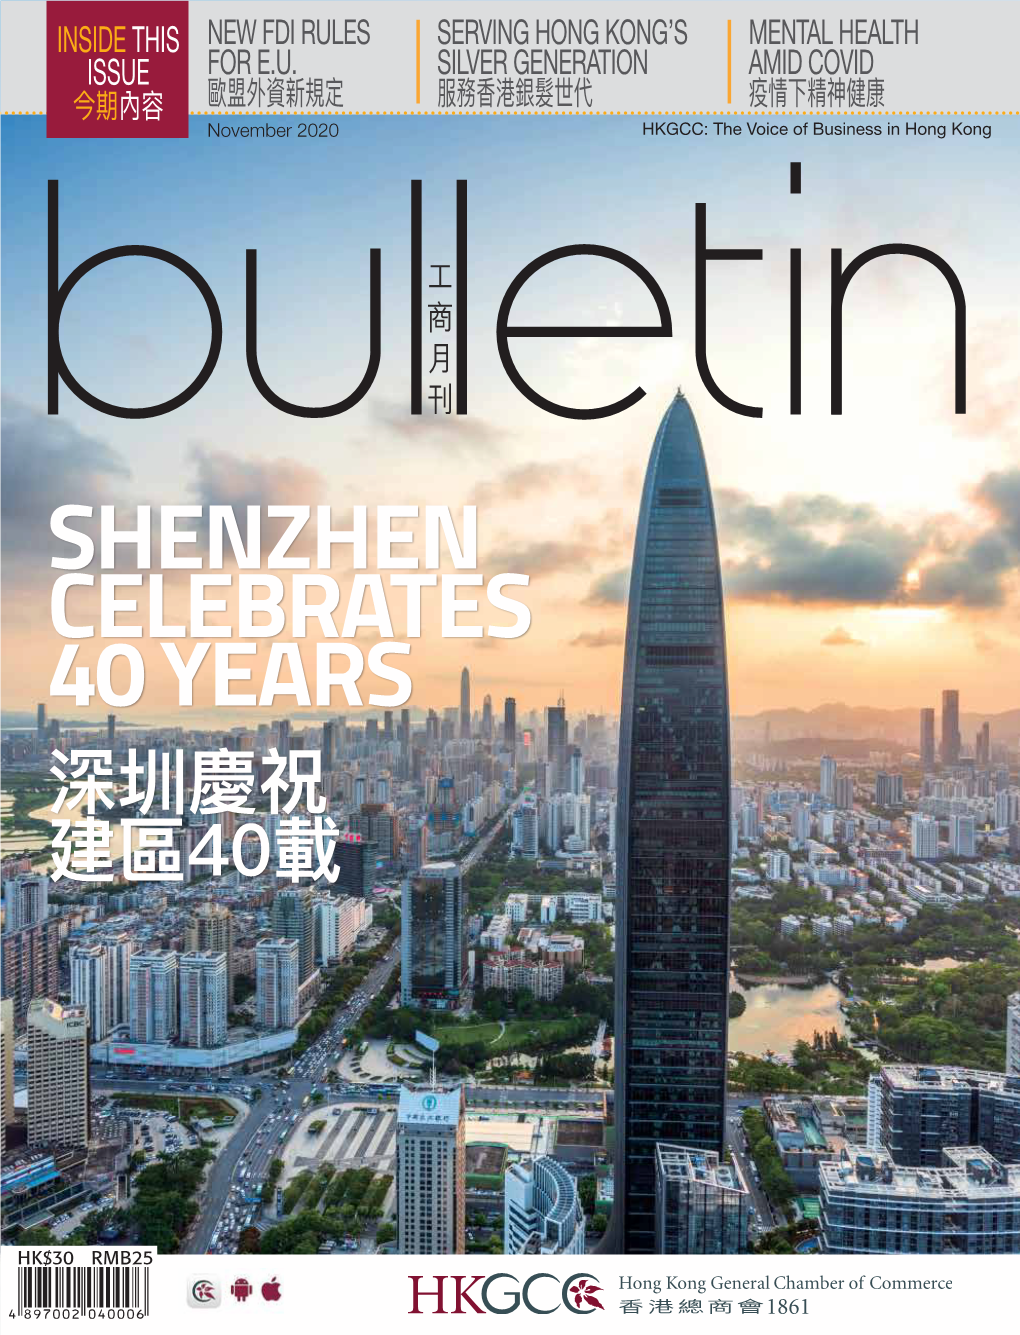 Shenzhen Celebrates 40 Years 深圳慶祝 建區40載 Nov 2020 Nov